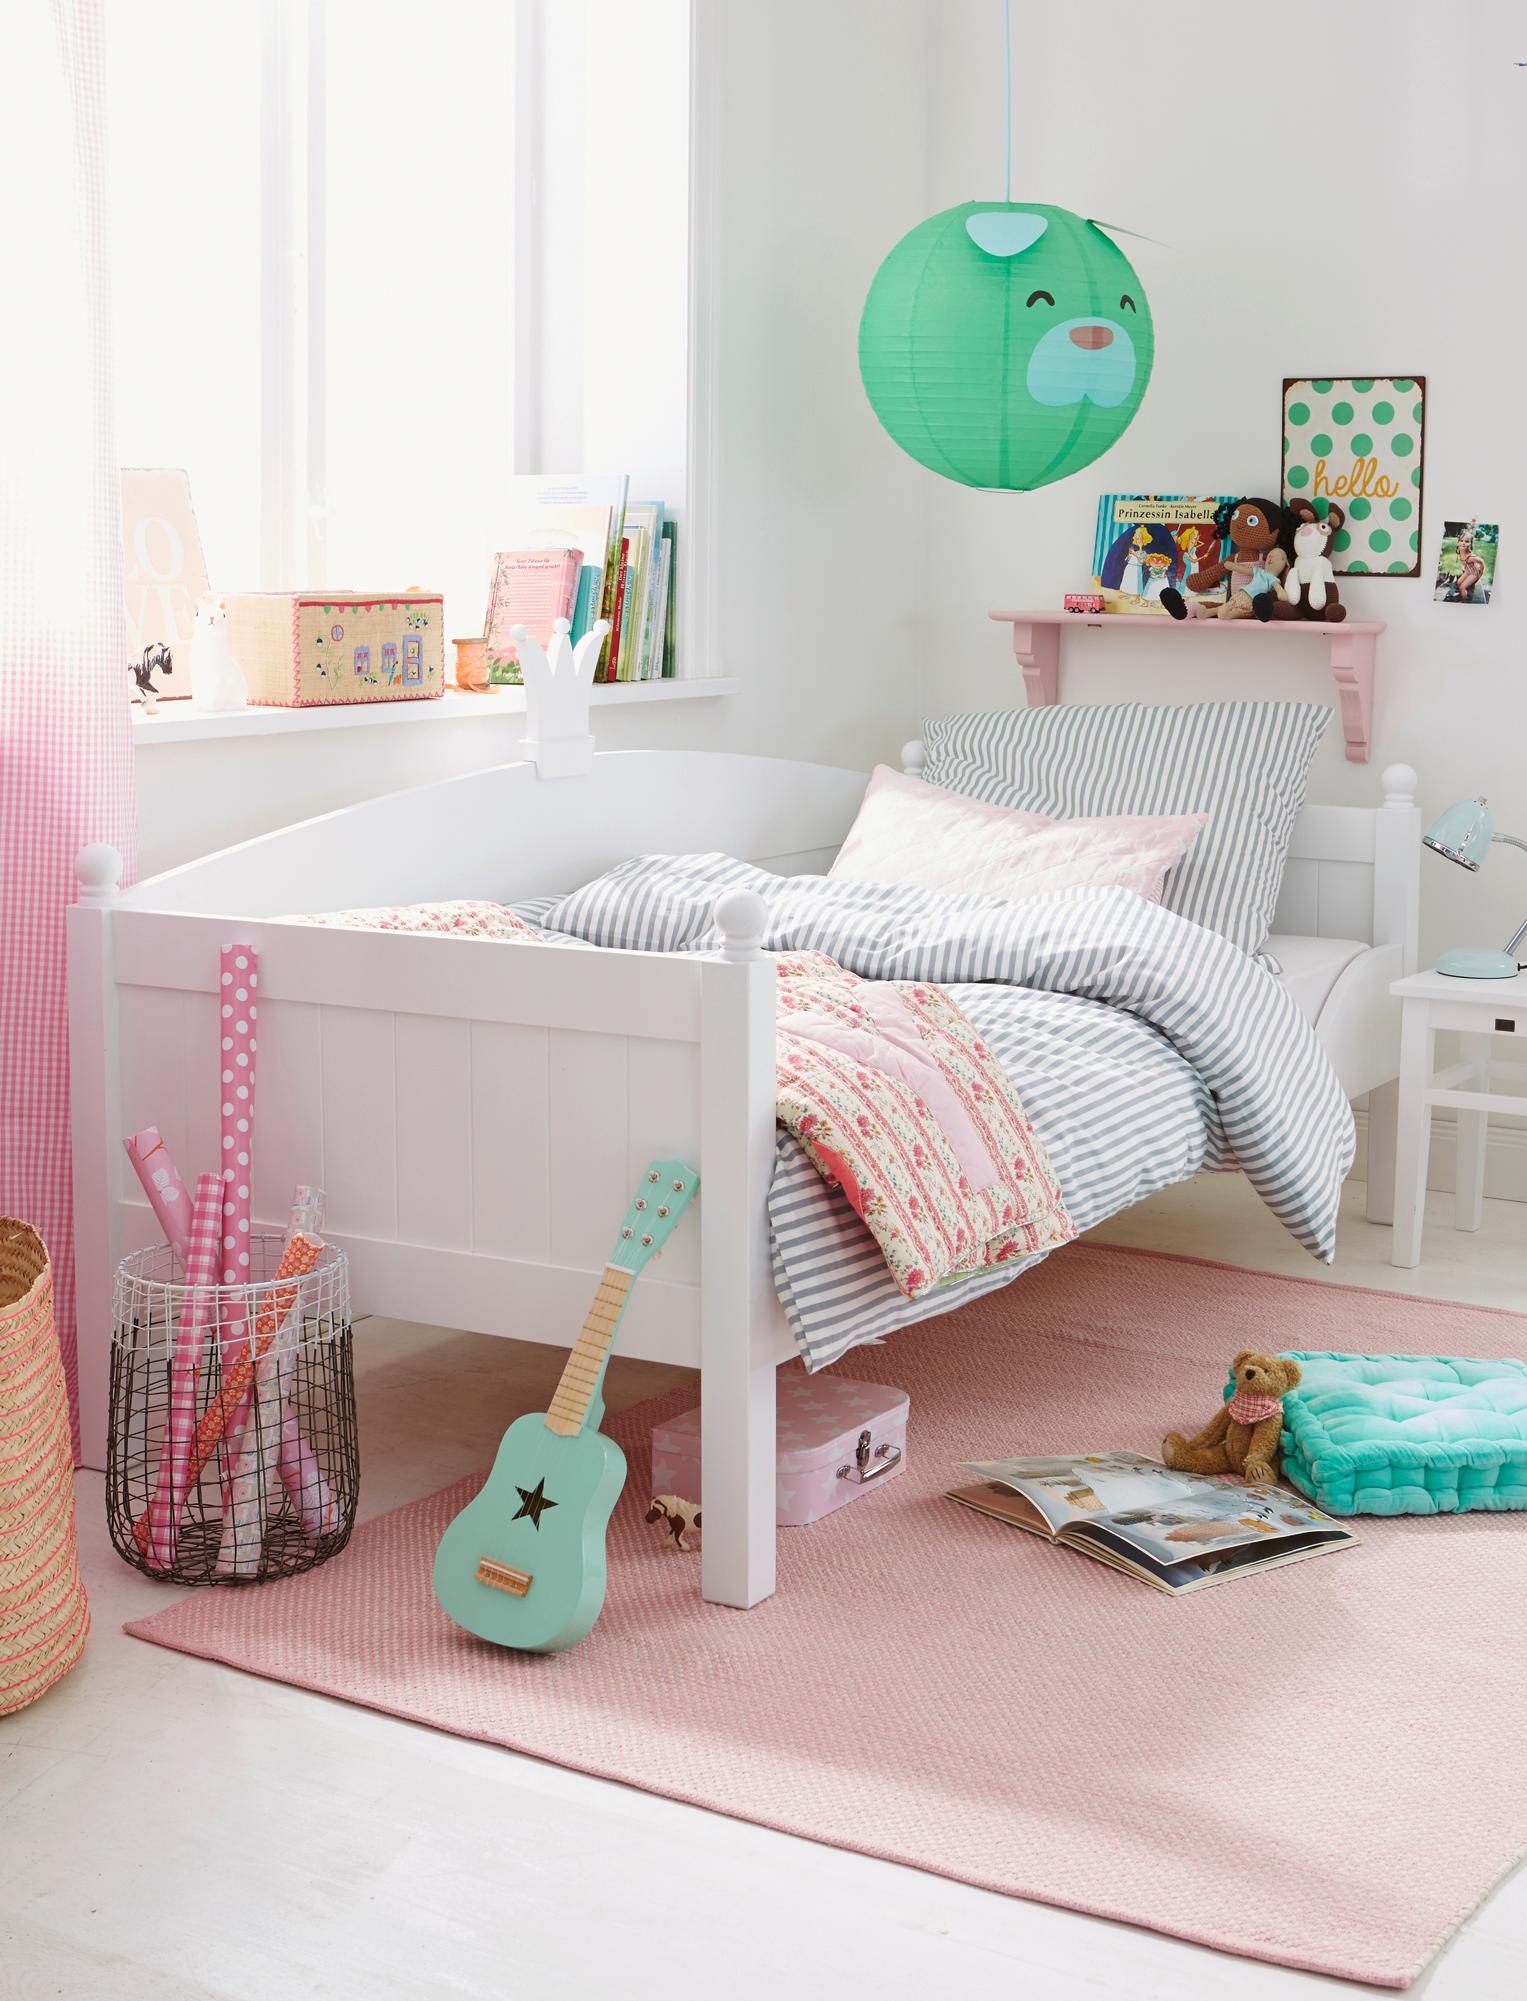 Kinderzimmer in Pastellfarben einrichten #pastellfarbe #zimmergestaltung ©Car Selbstbaumöbel